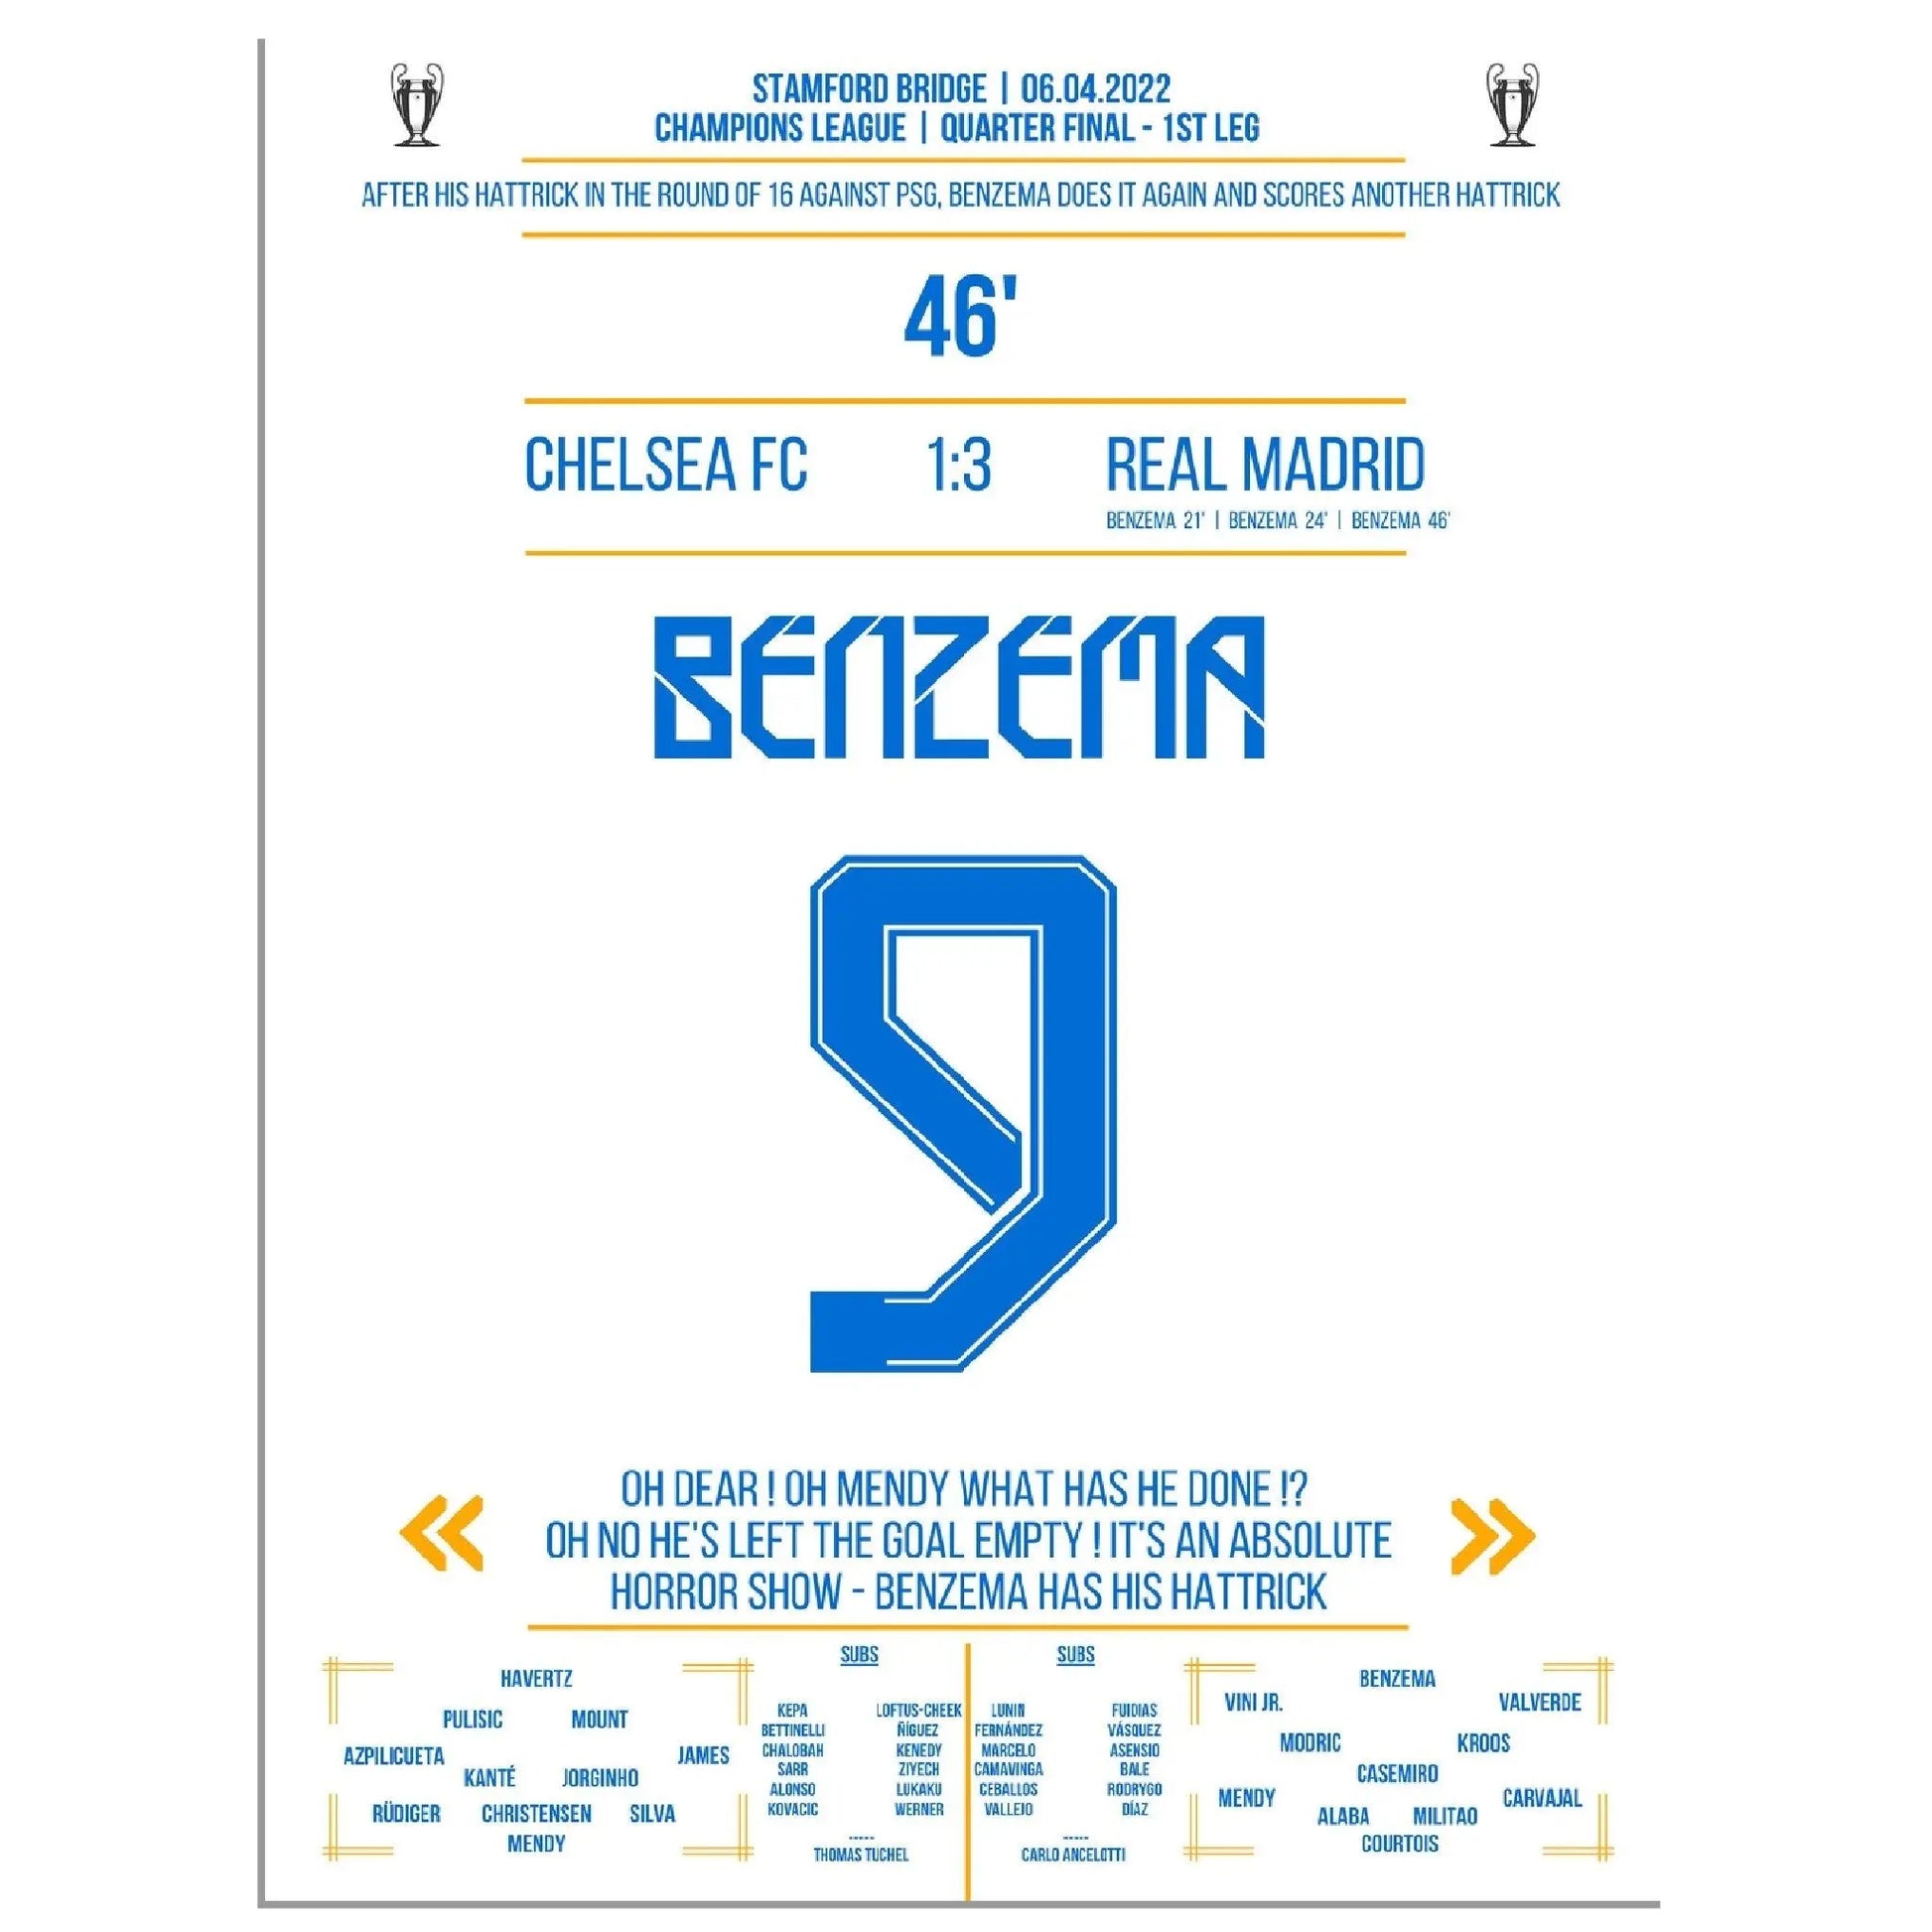 Nächste Runde - Nächster hattrick! Benzema bezwingt Chelsea im Alleingang 